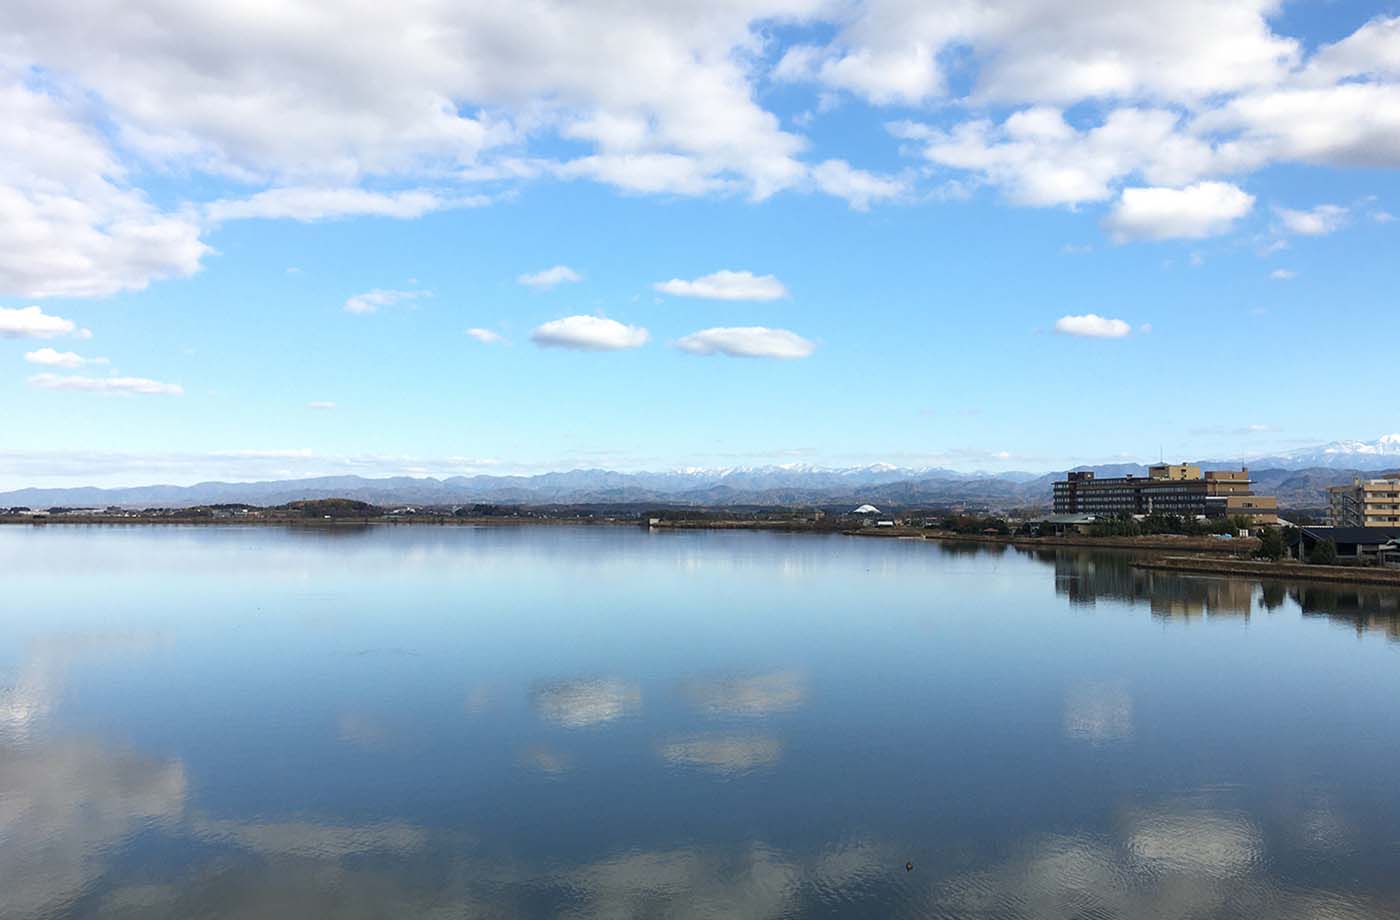 片山津温泉総湯からの柴山潟の眺め